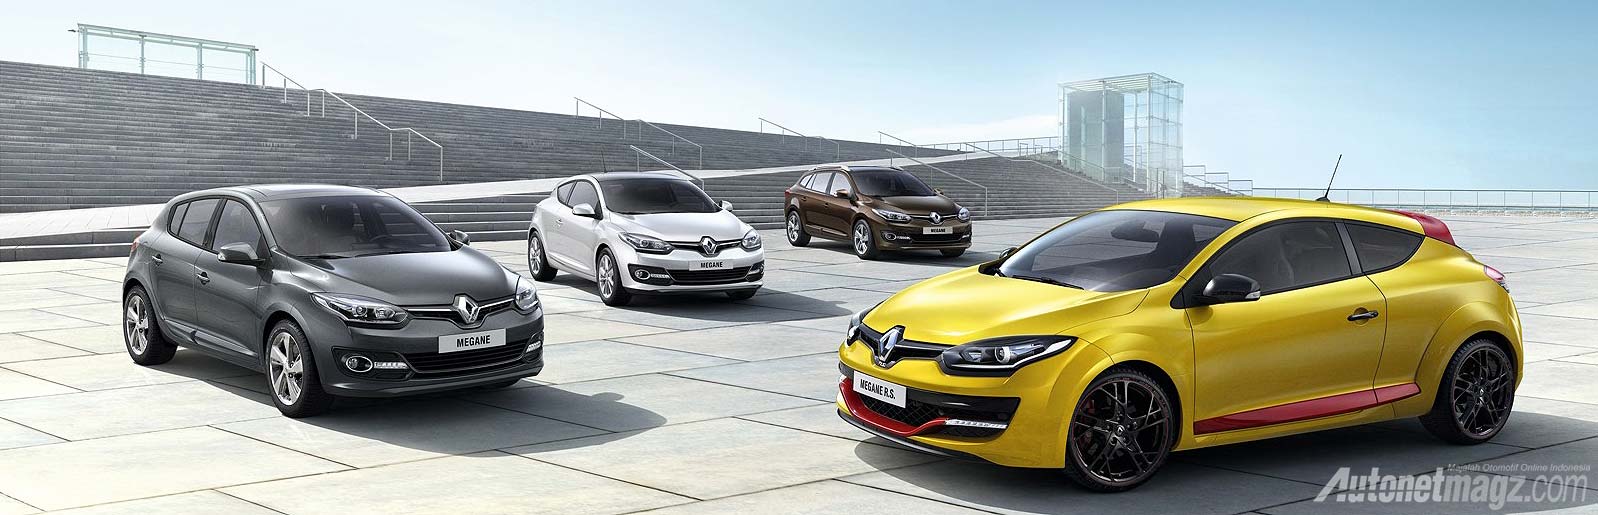 Frankfurt Motor Show 2013, Renault Megane facelift 2014: Renault Megane facelift 2014 Diperkenalkan Sesaat Sebelum Frankfurt Motor Show